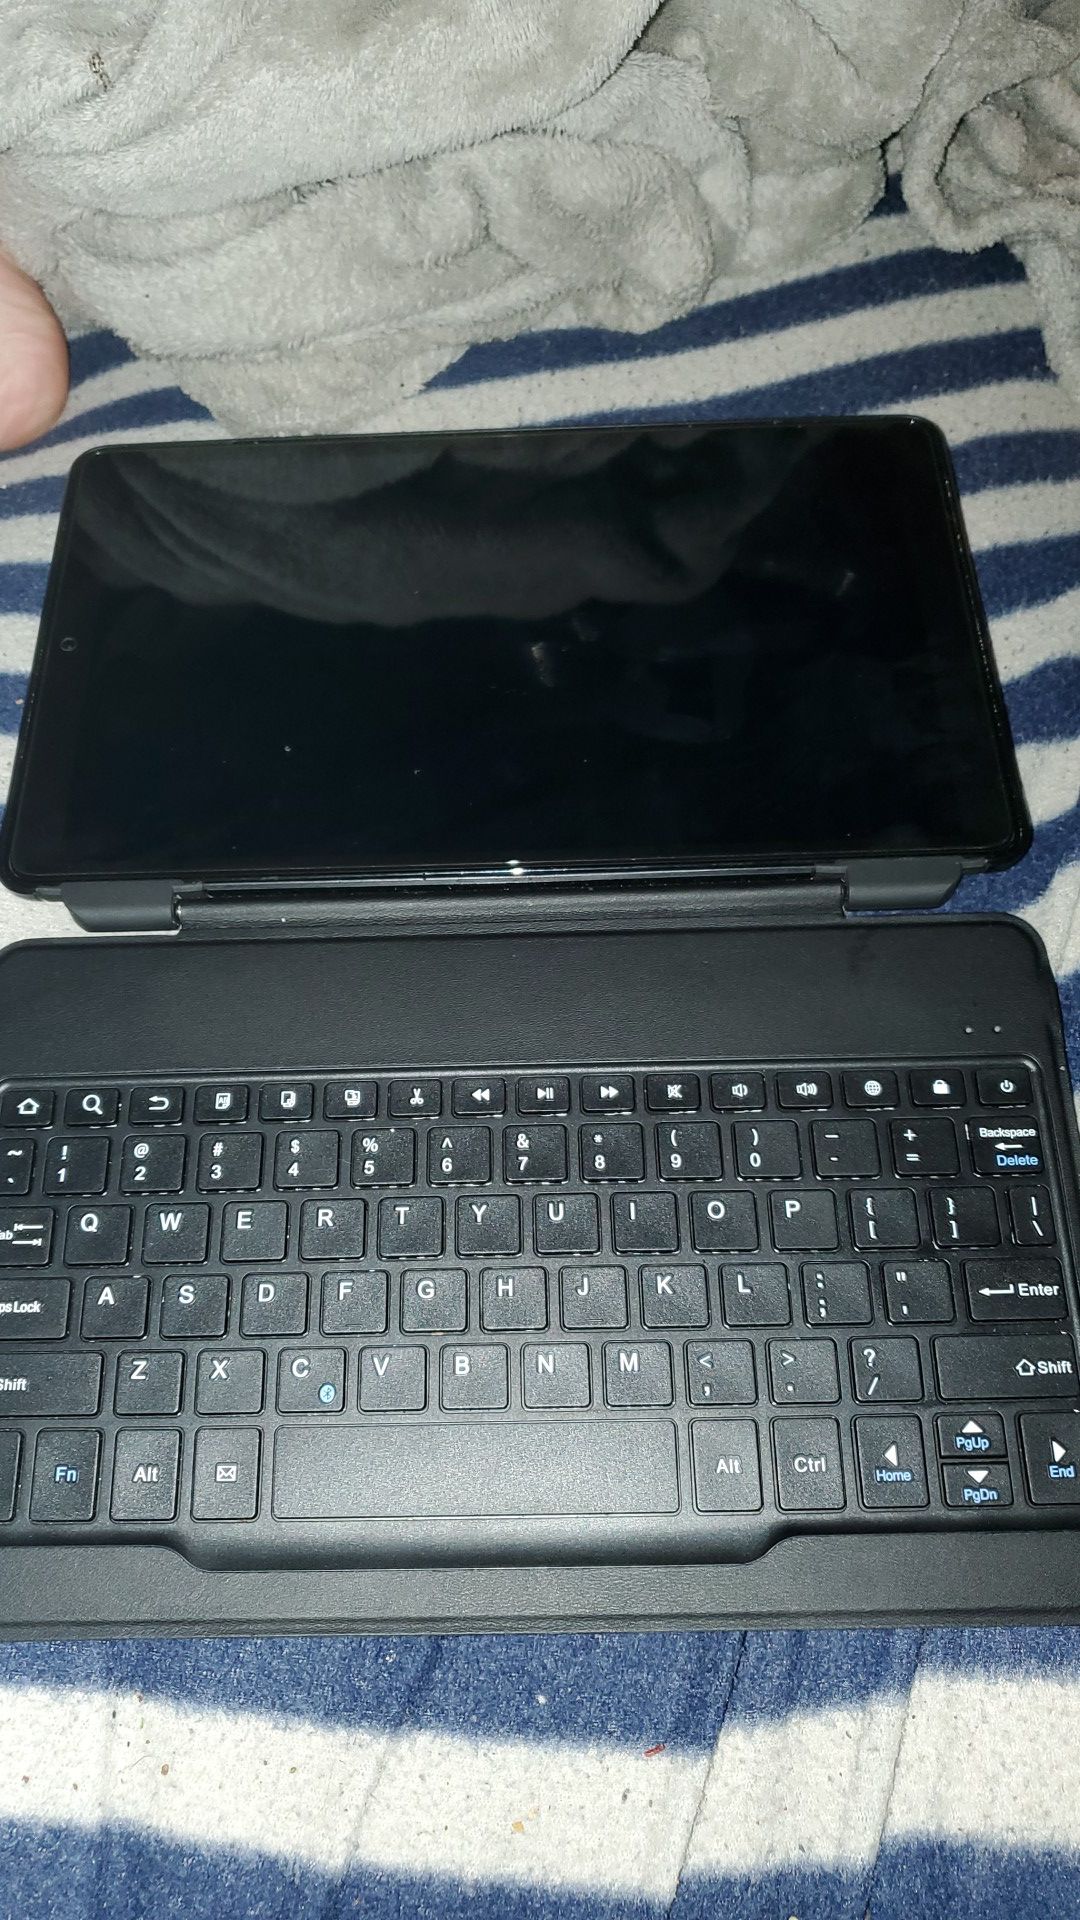 Samsung Galaxy Tab A 10.1 with Bluetooth keyboard case